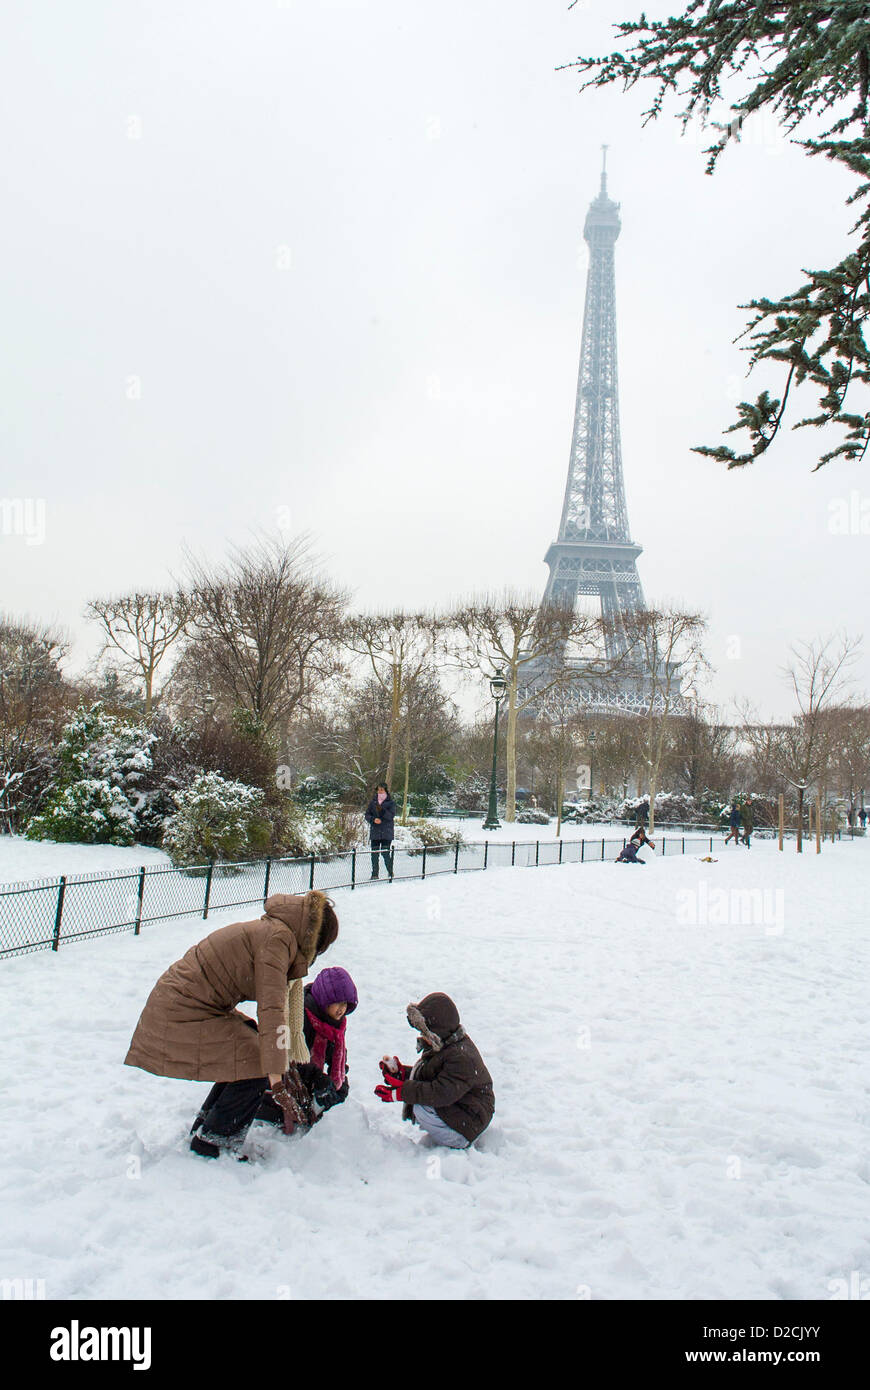 Parigi, Francia, Famiglia godendo di neve invernale Scenics, Torre Eiffel, Champs de Mars, Urban Playground coperto di neve, persone in tempesta di neve Foto Stock